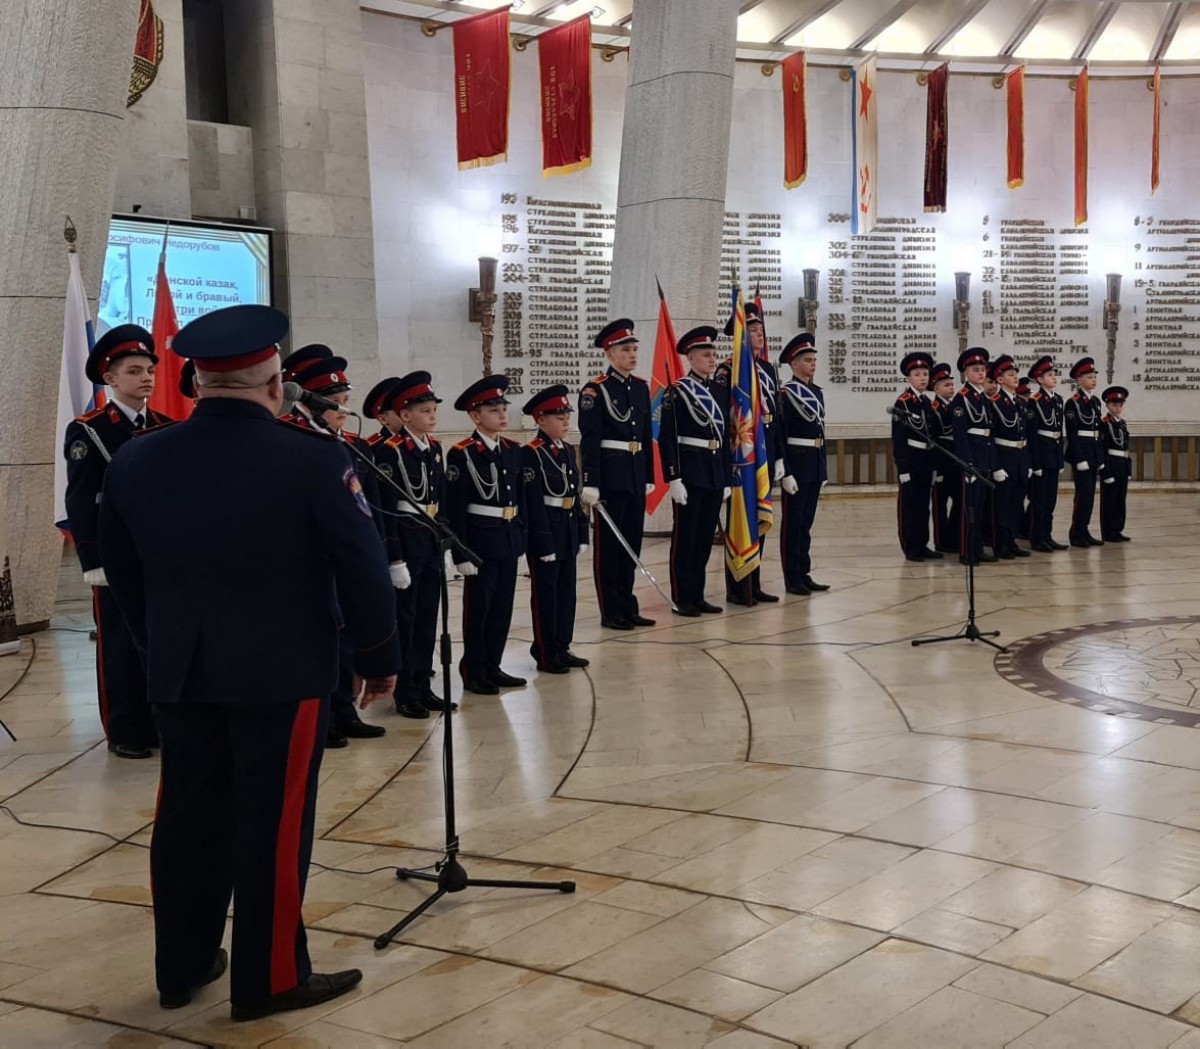 Торжественная клятва кадета В триумфальном зале музея-панорамы «Сталинградская битва» 18 воспитанников произнесли торжественную клятву кадета